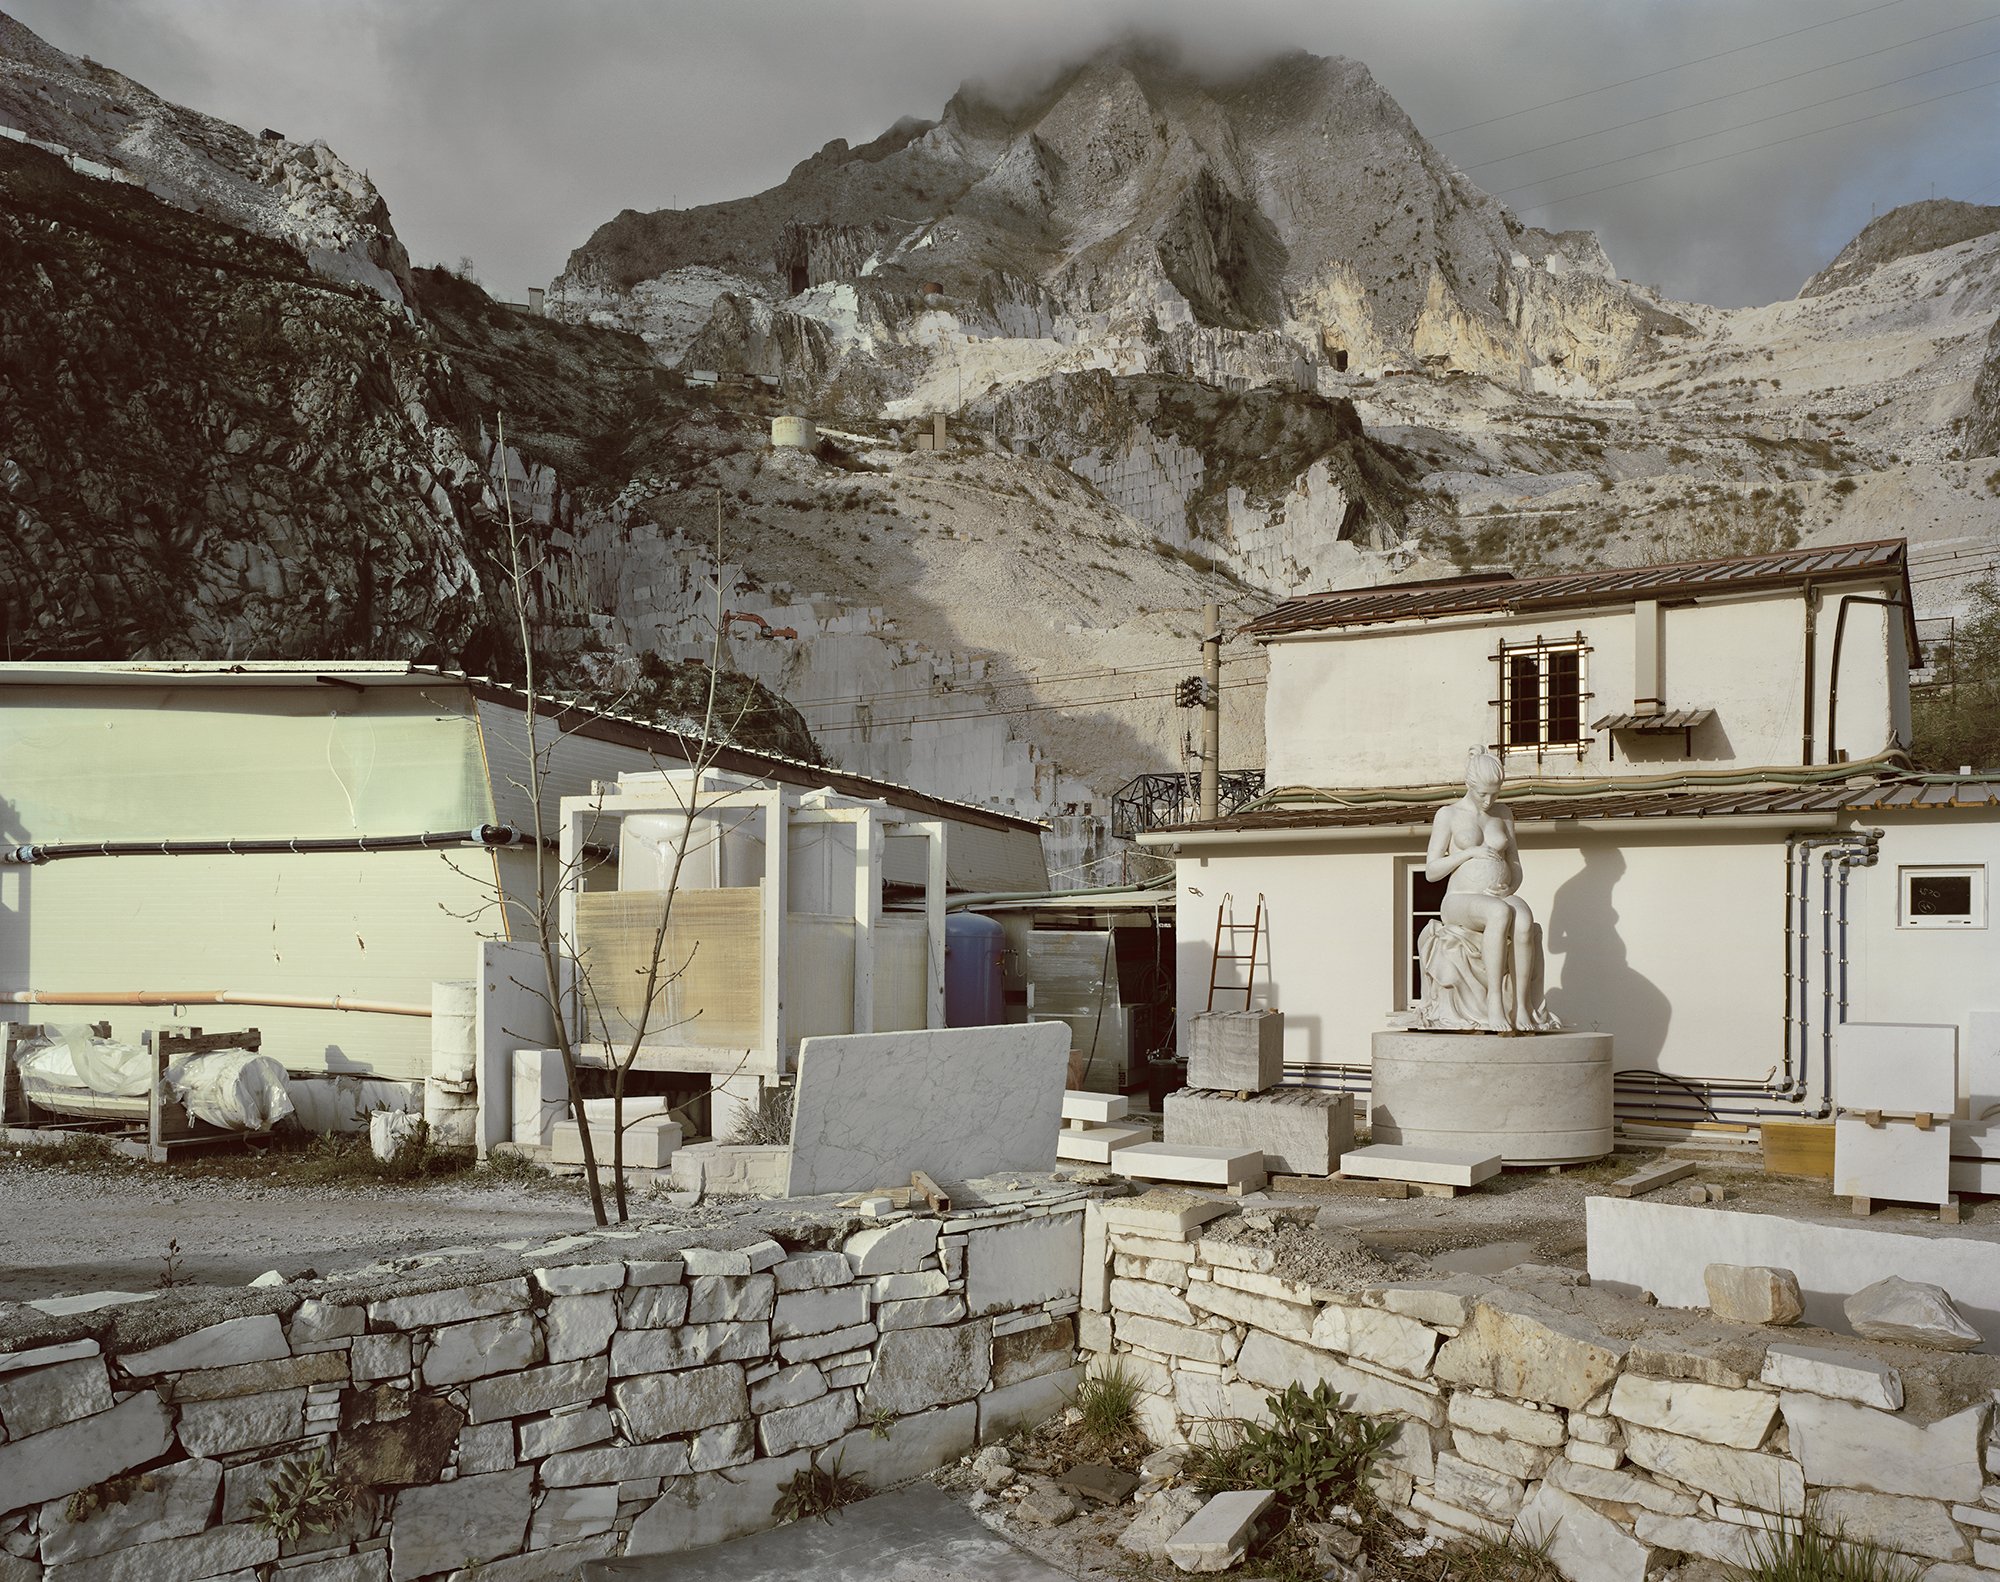  Quarry Workshop, Carrara. 2014. 